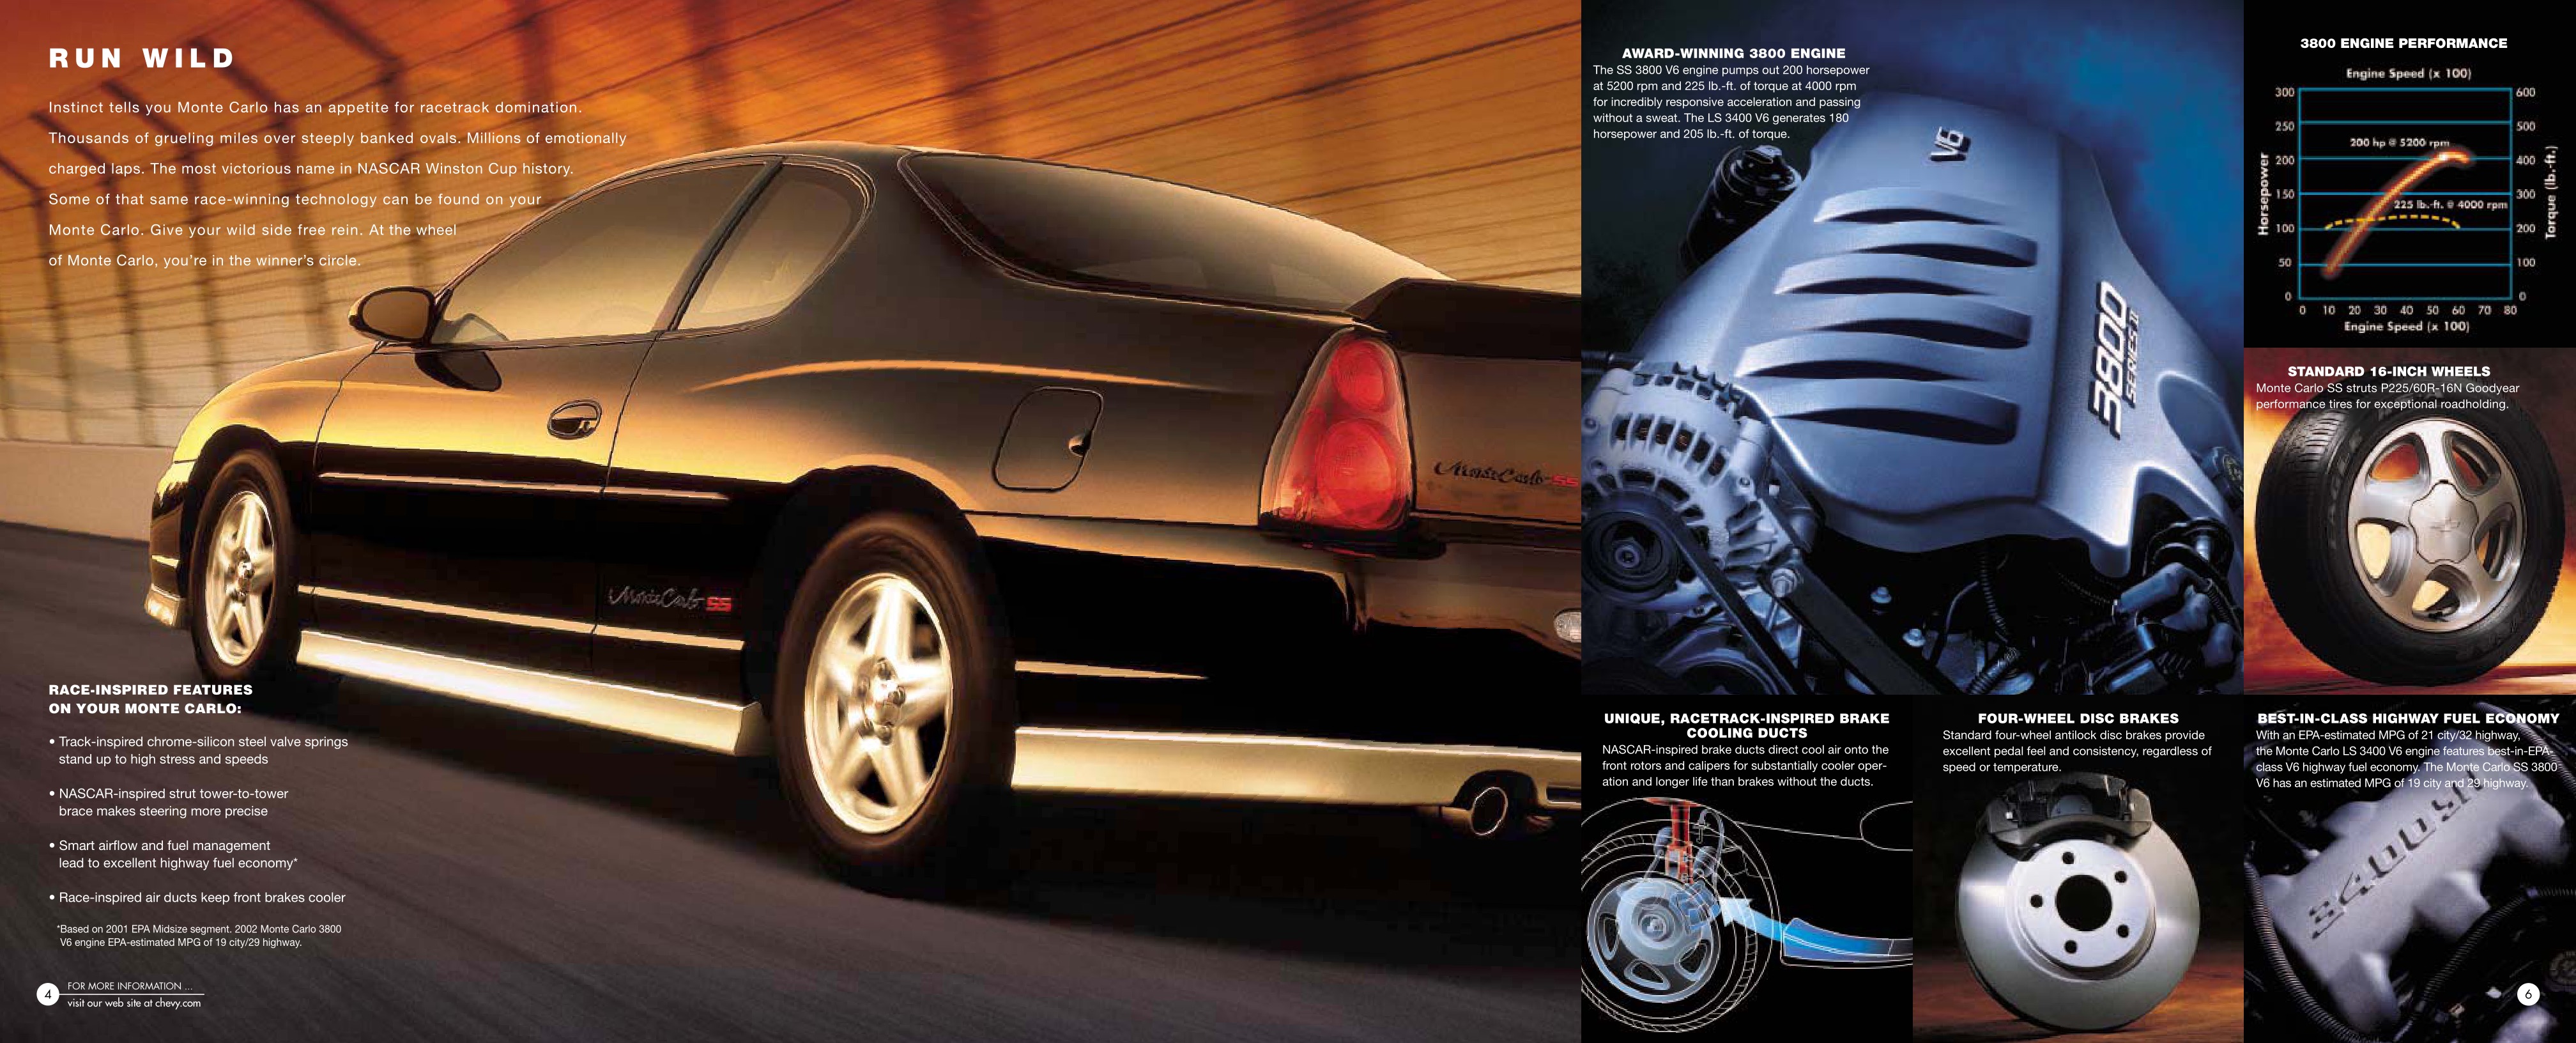 2002 Chevrolet Monte Carlo Brochure Page 8